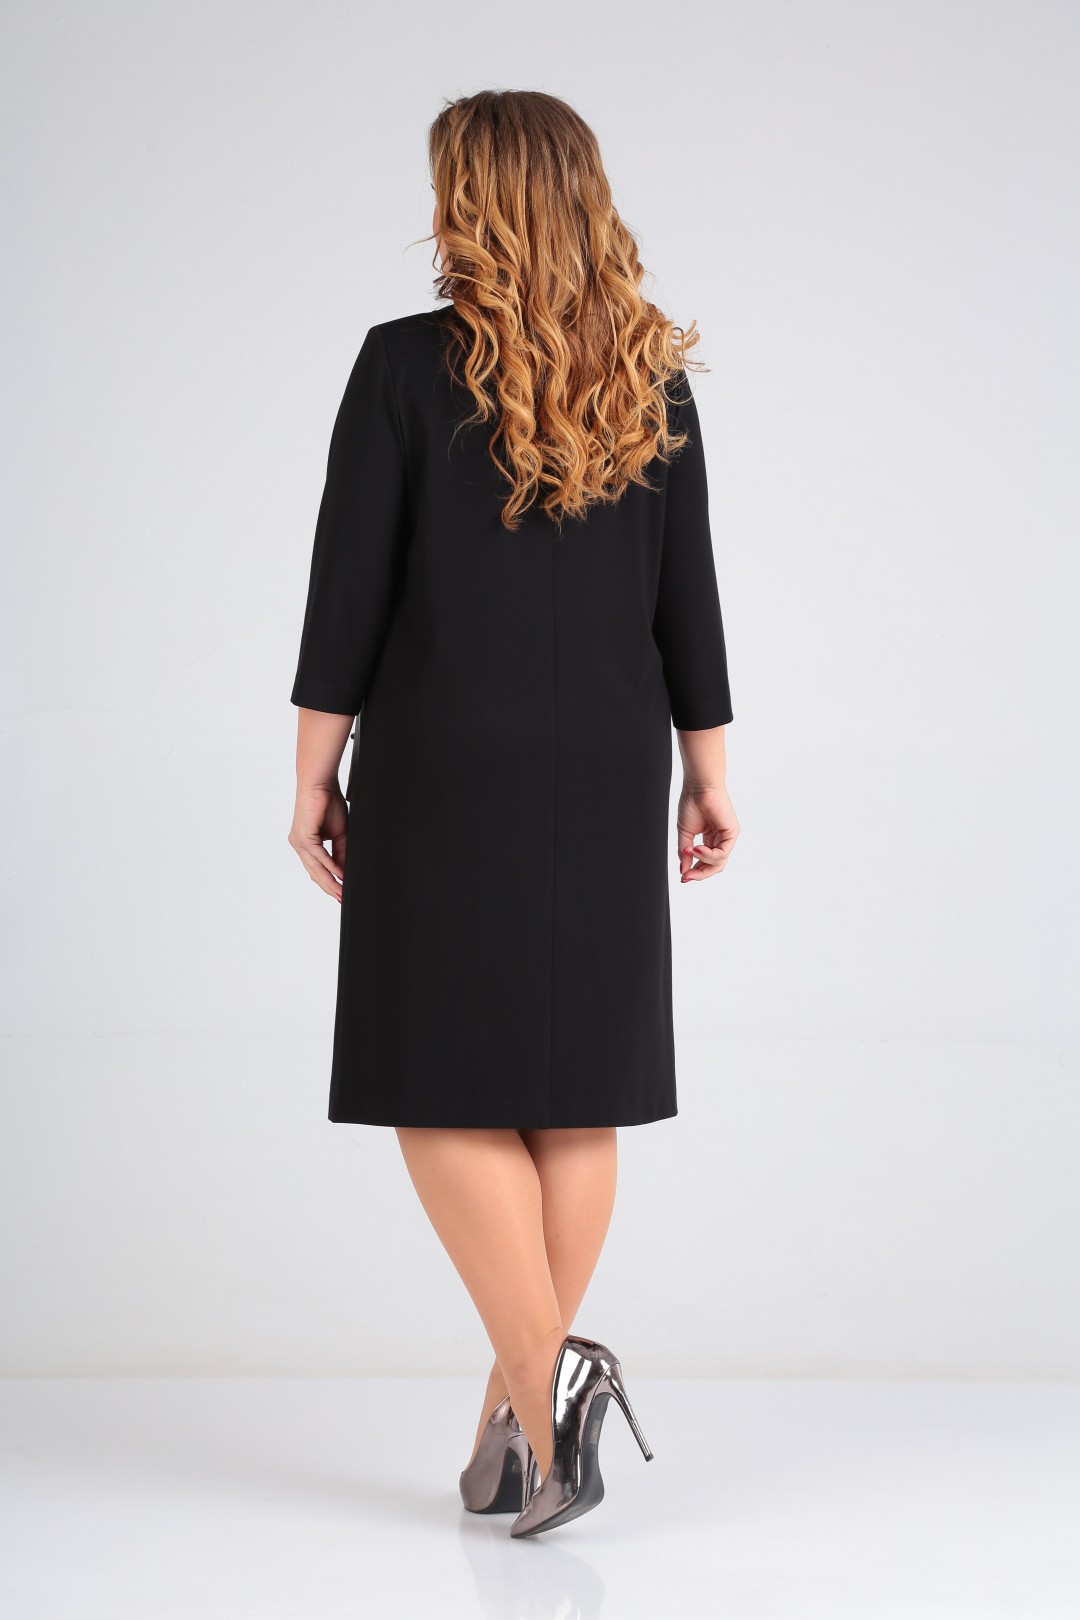 Платье Карина Делюкс В-349 черный